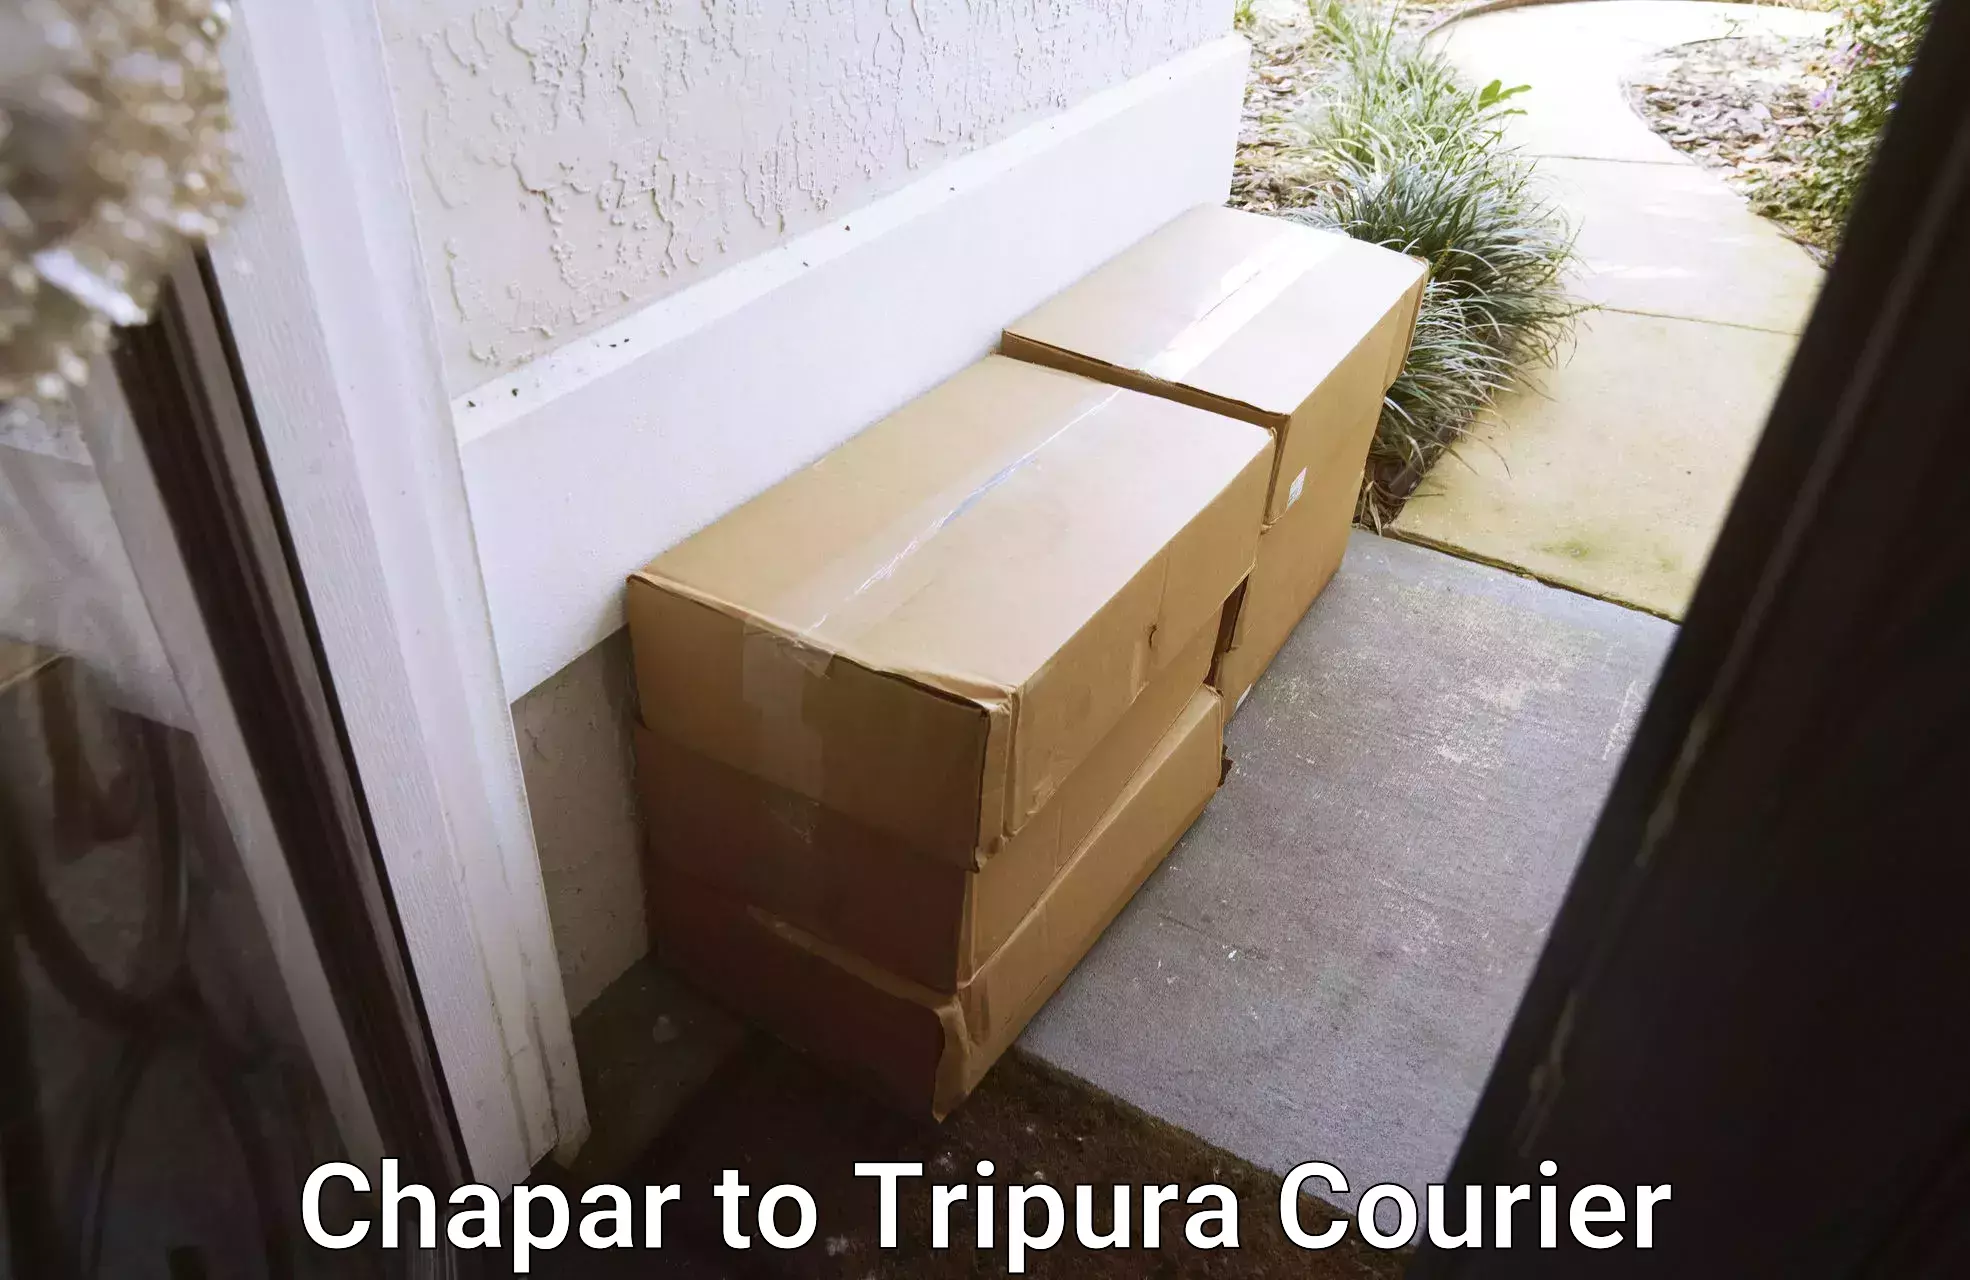 Smart logistics solutions Chapar to Tripura